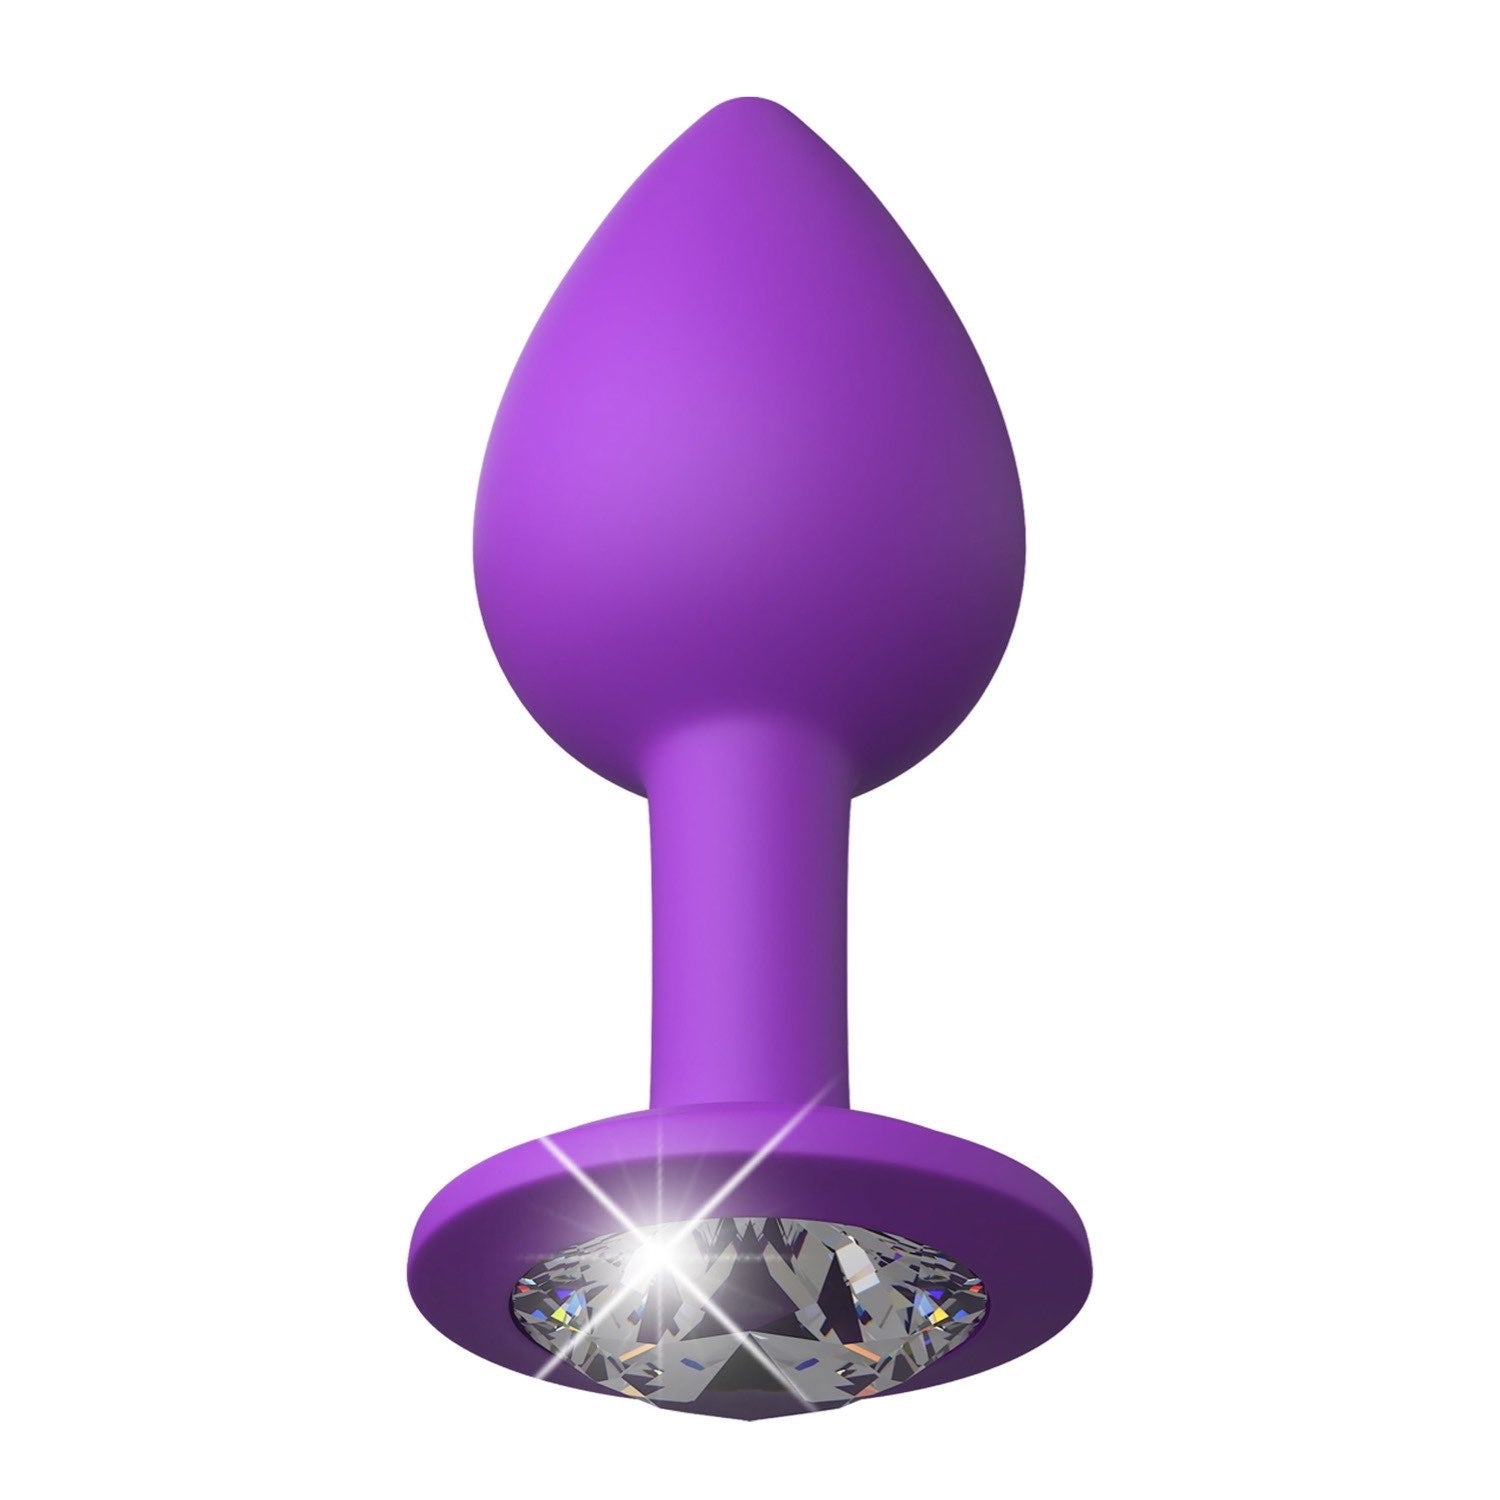 为她幻想 Little Gem 小插头 - 紫色 7.2 厘米对接插头，带宝石底座 by Pipedream